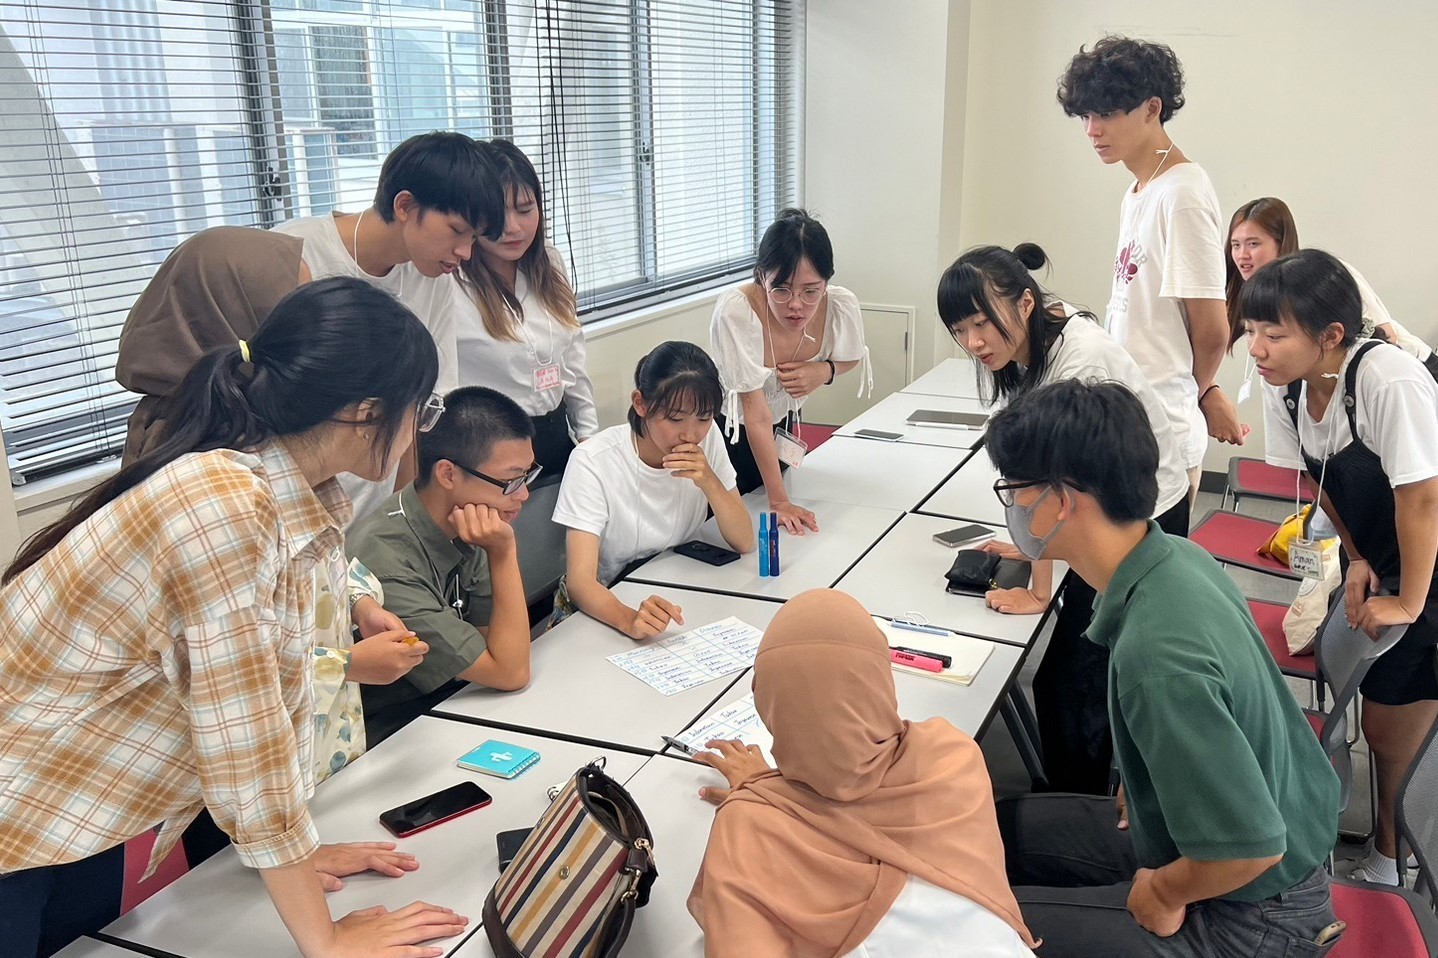 來自臺灣、日本、印尼的學生共同交流參與地方創生的經驗與想法